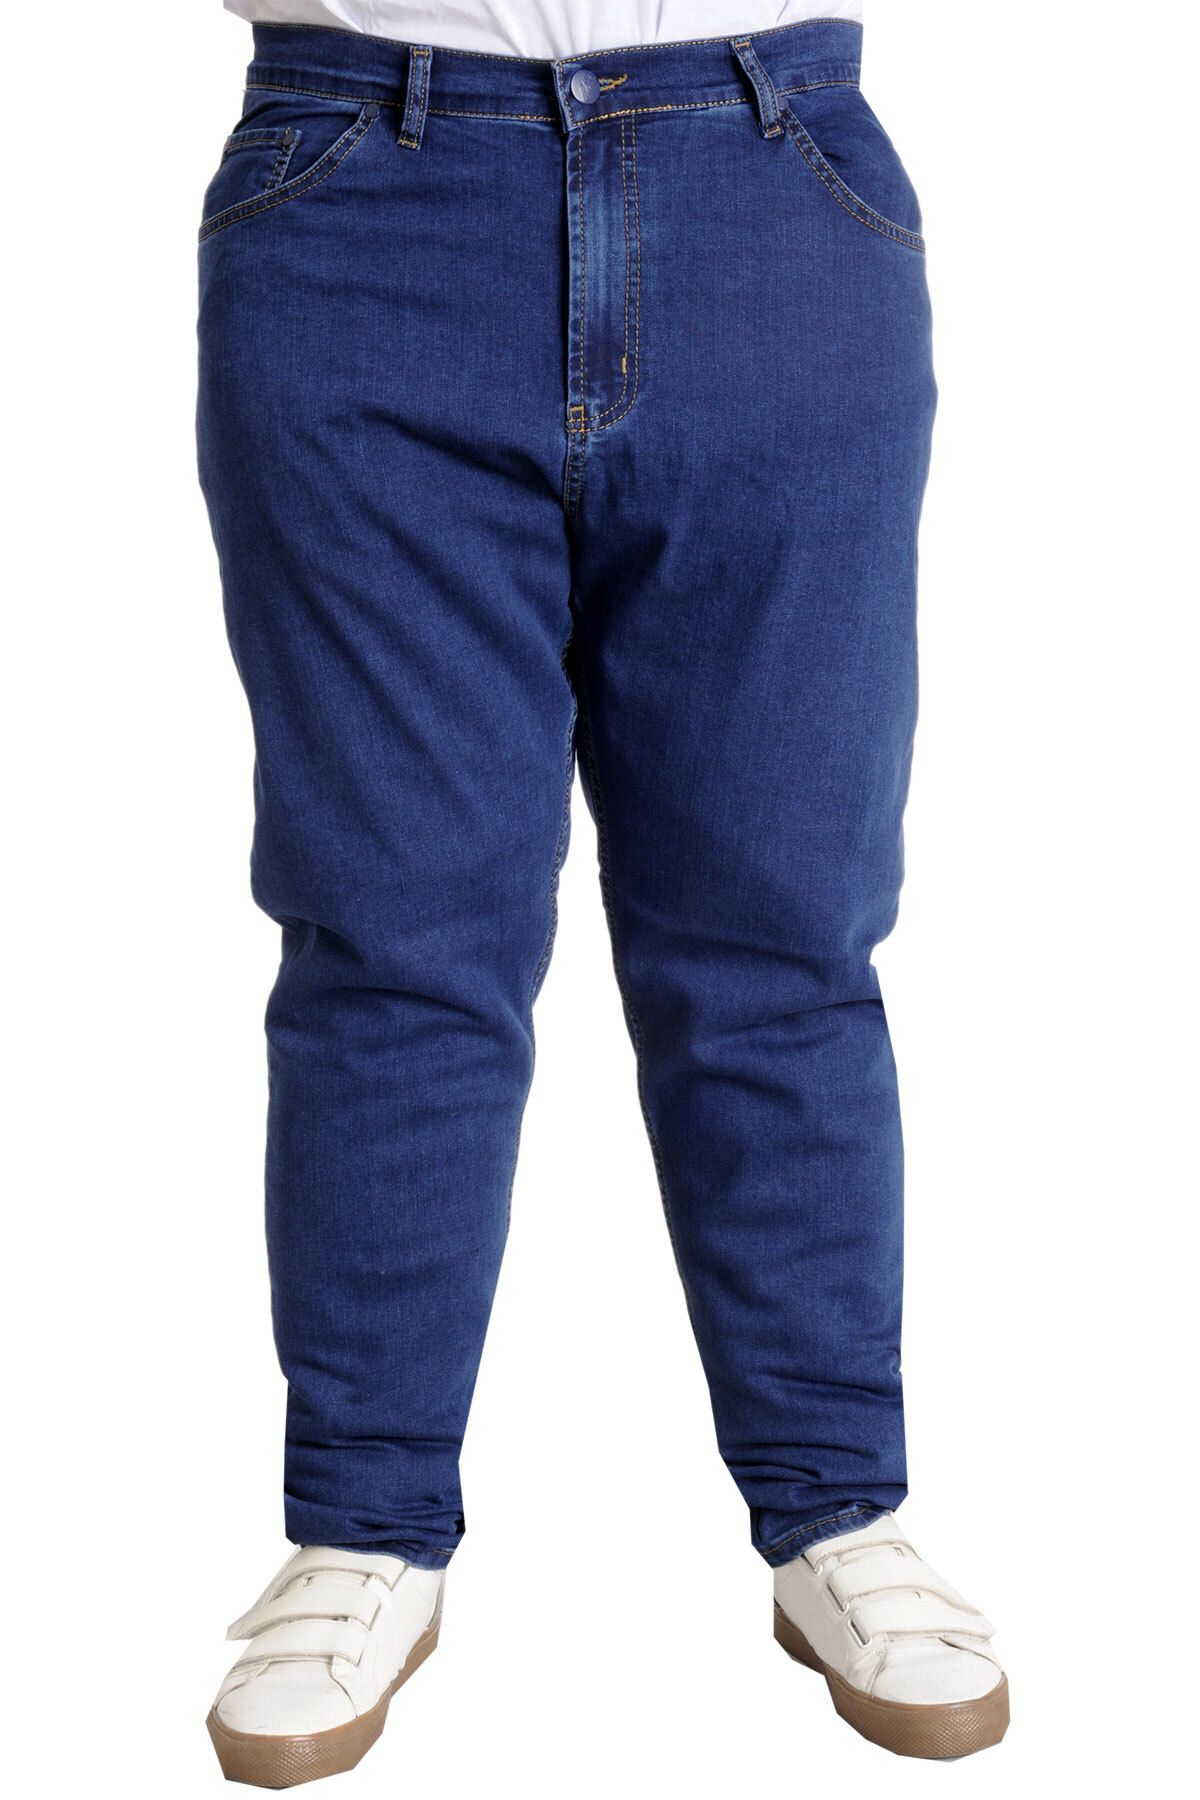 Modexl Mode Xl Büyük Beden Erkek Pantolon Kot Klasik Veneto 22942 Koyu Mavi